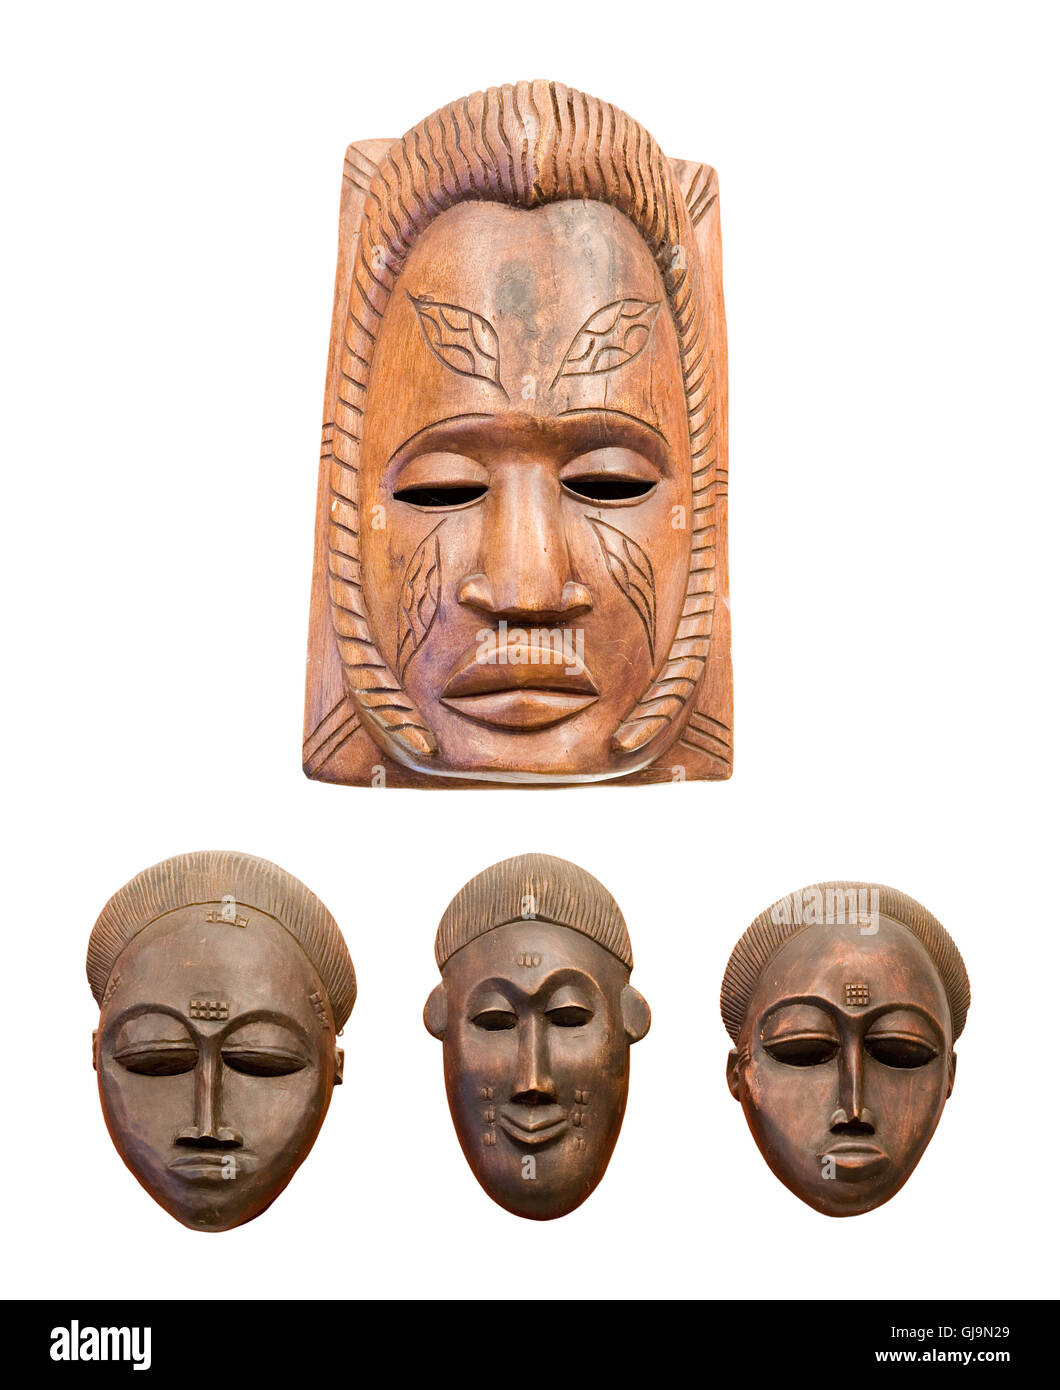 Alte afrikanische maske Ausgeschnittene Stockfotos und -bilder - Seite 2 -  Alamy